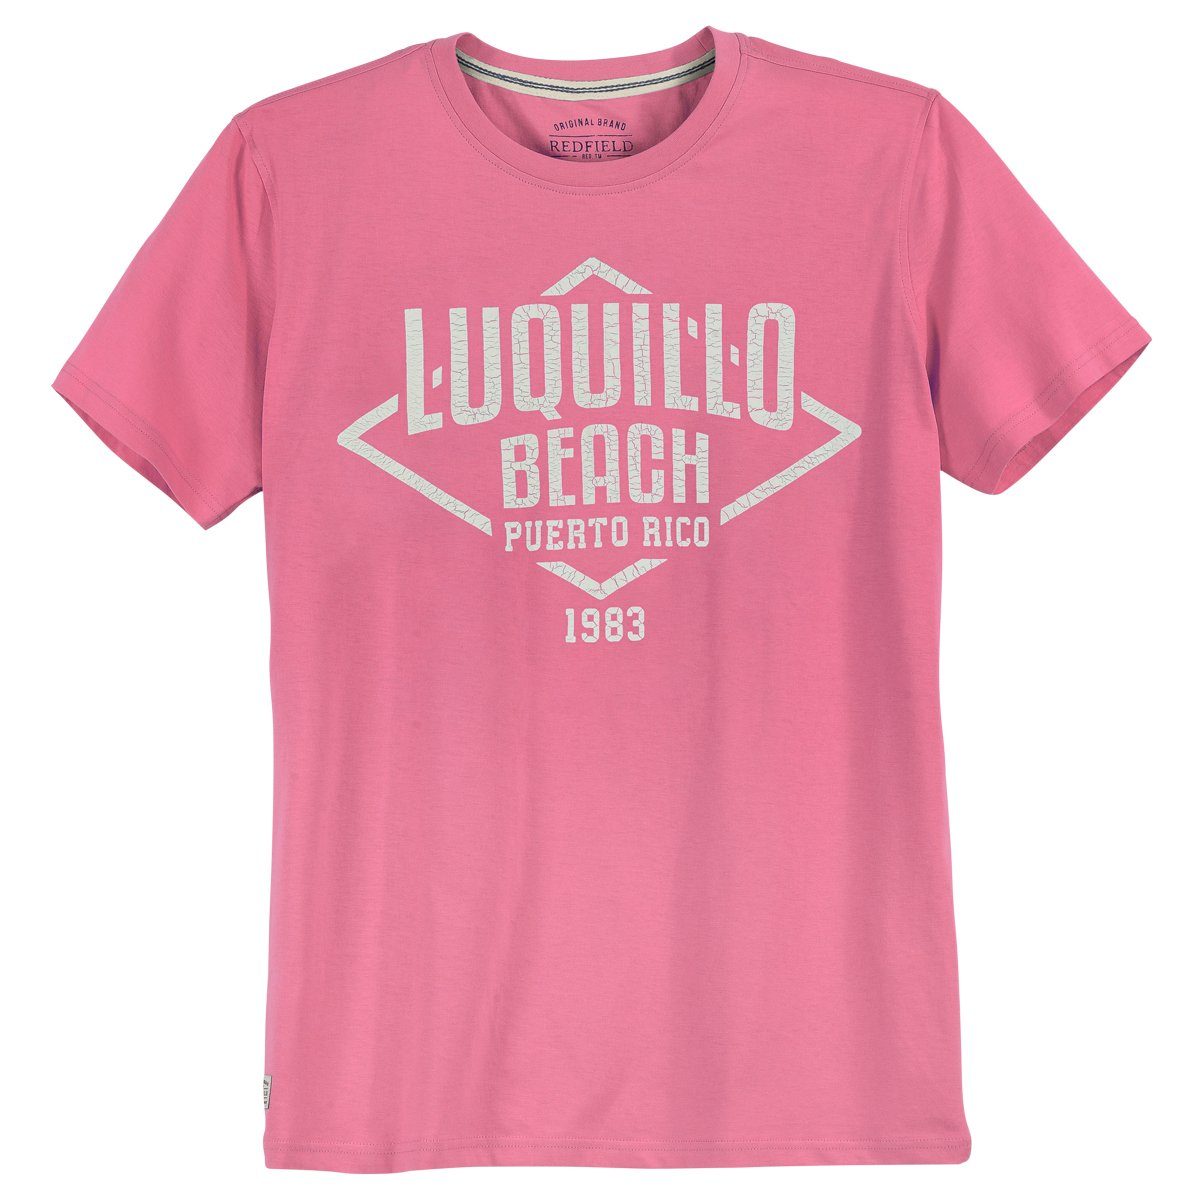 redfield Rundhalsshirt Große Größen T-Shirt pink Print Luquillo Beach Redfield